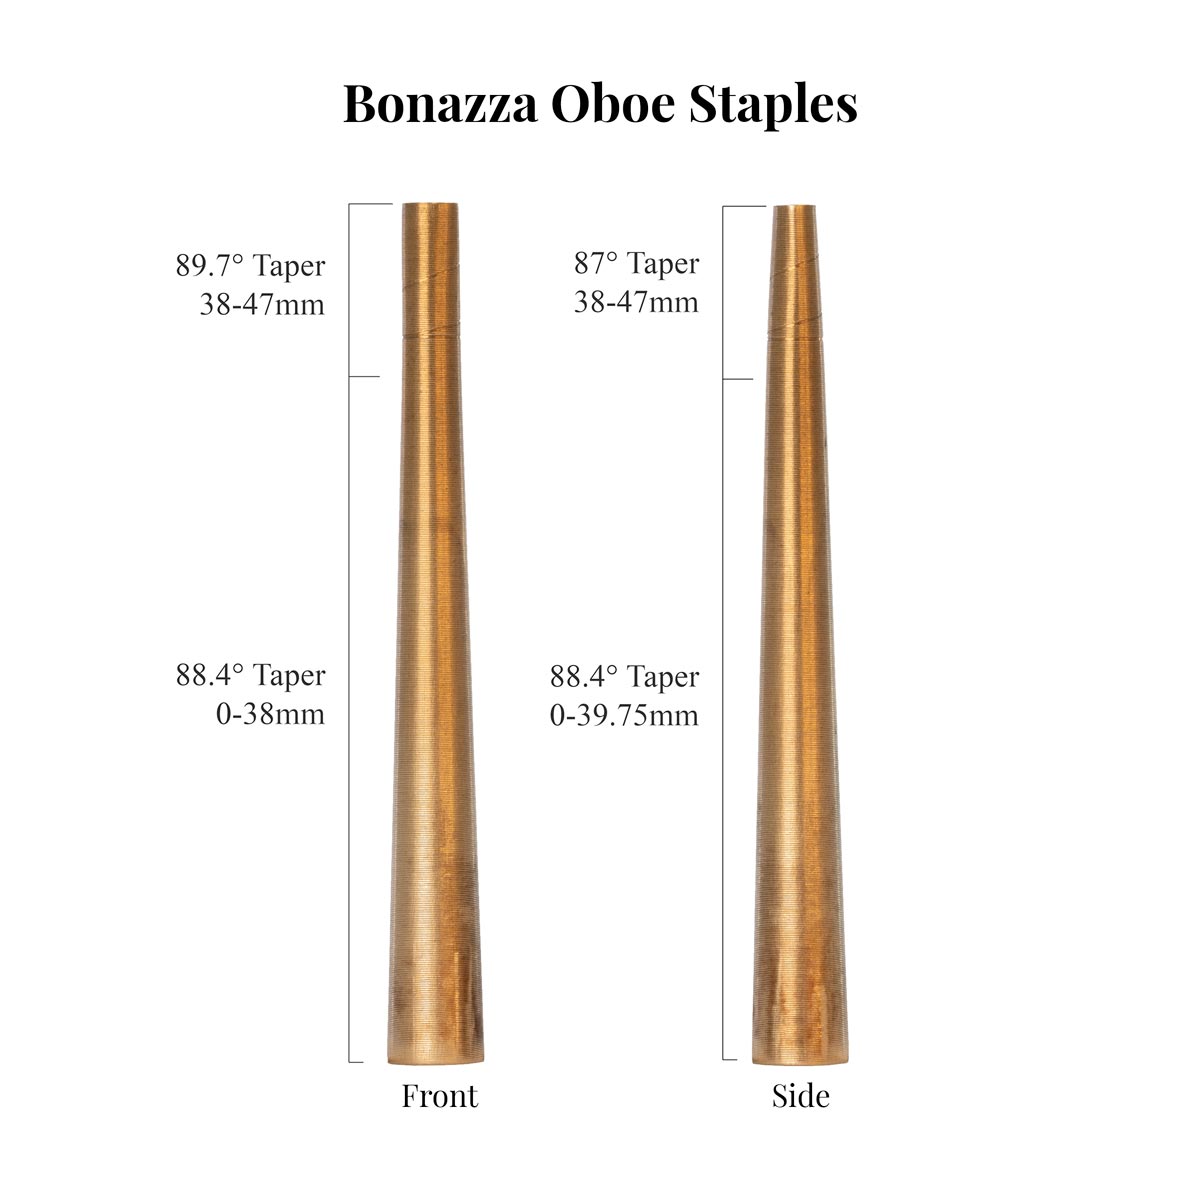 Bonazza Deluxe Oboe Staples Taper Comparison